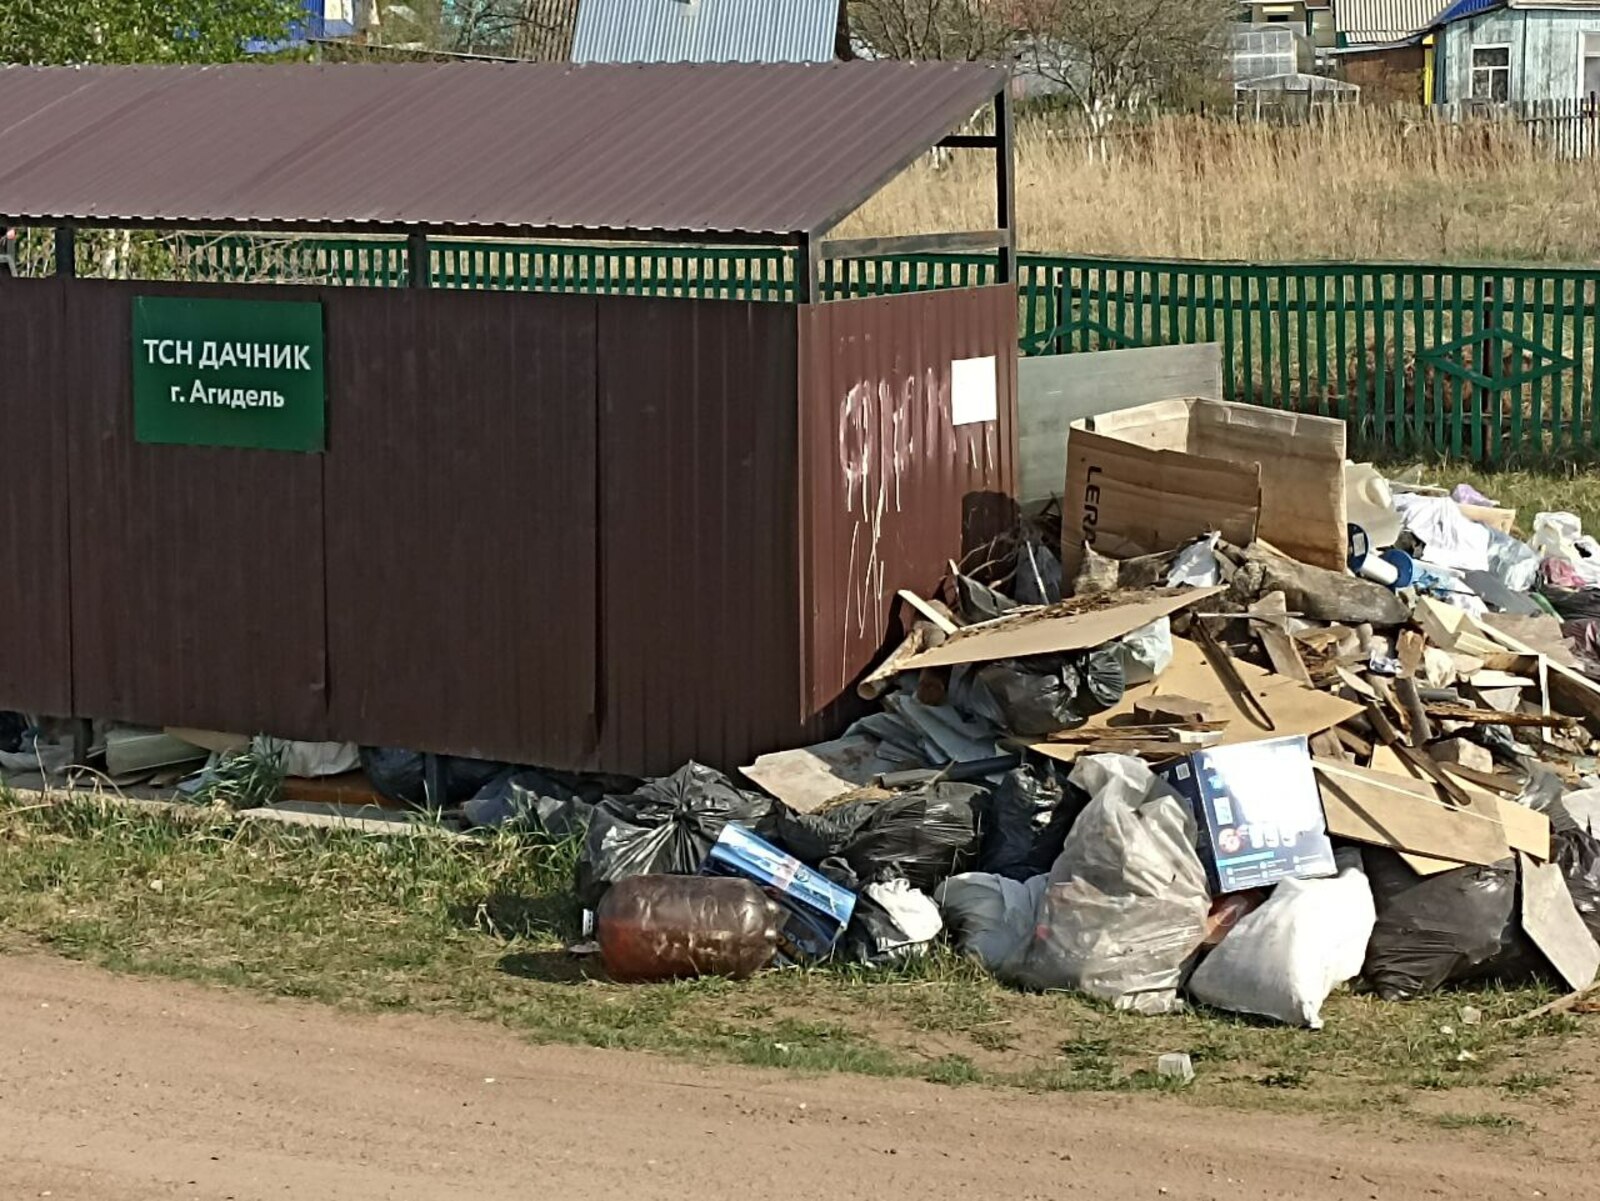 Житель Агидели выбросил возле ТСН “Дачник” мусор и получил штраф